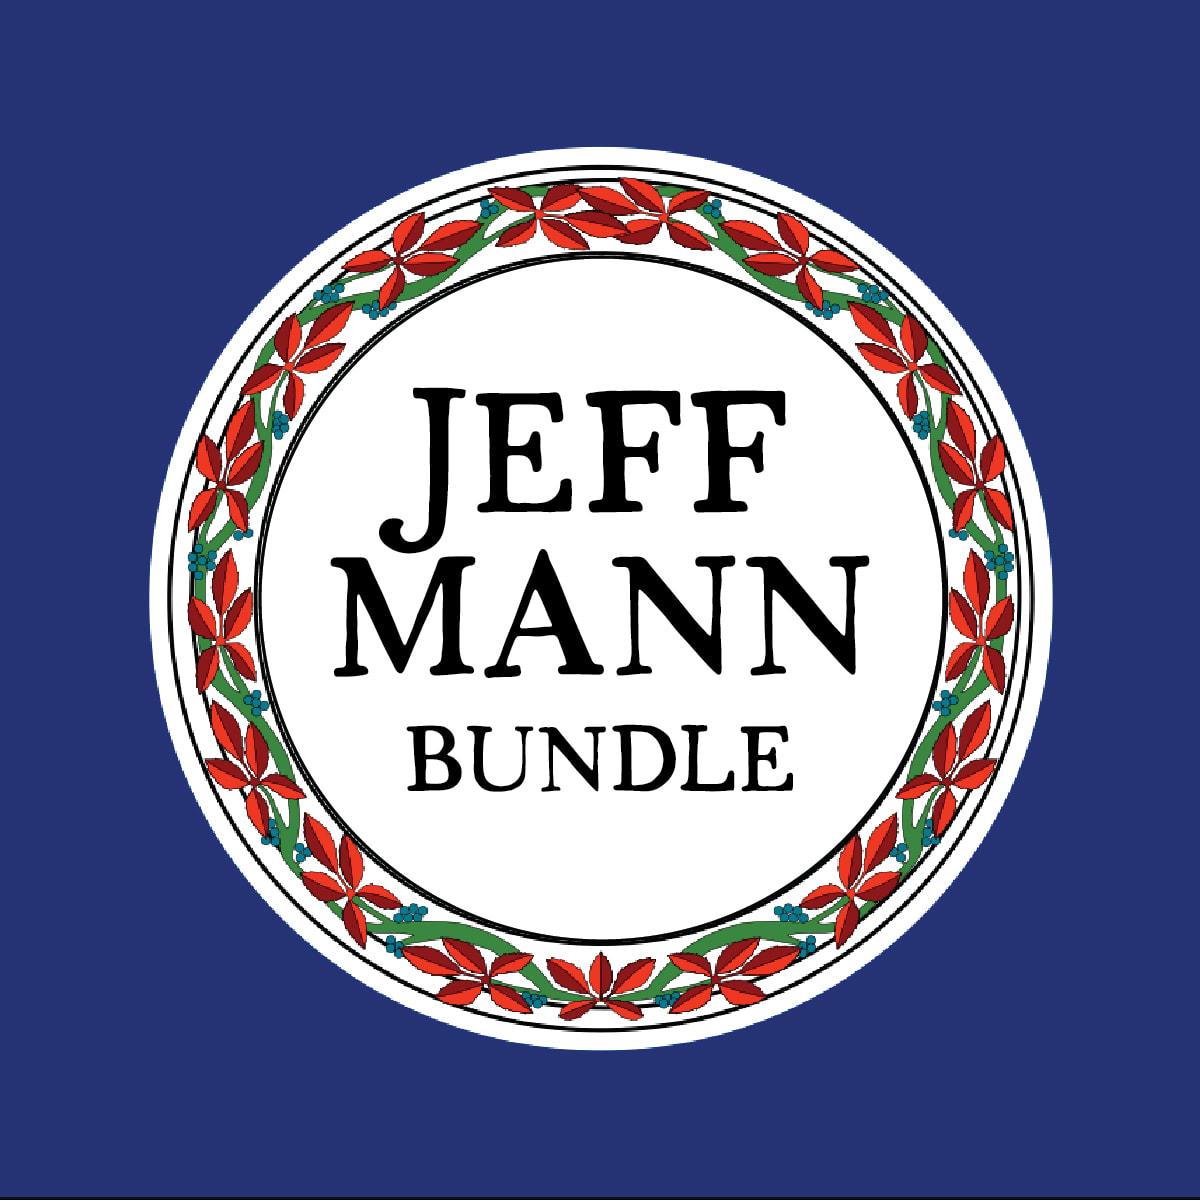 Jeff Mann Bundle